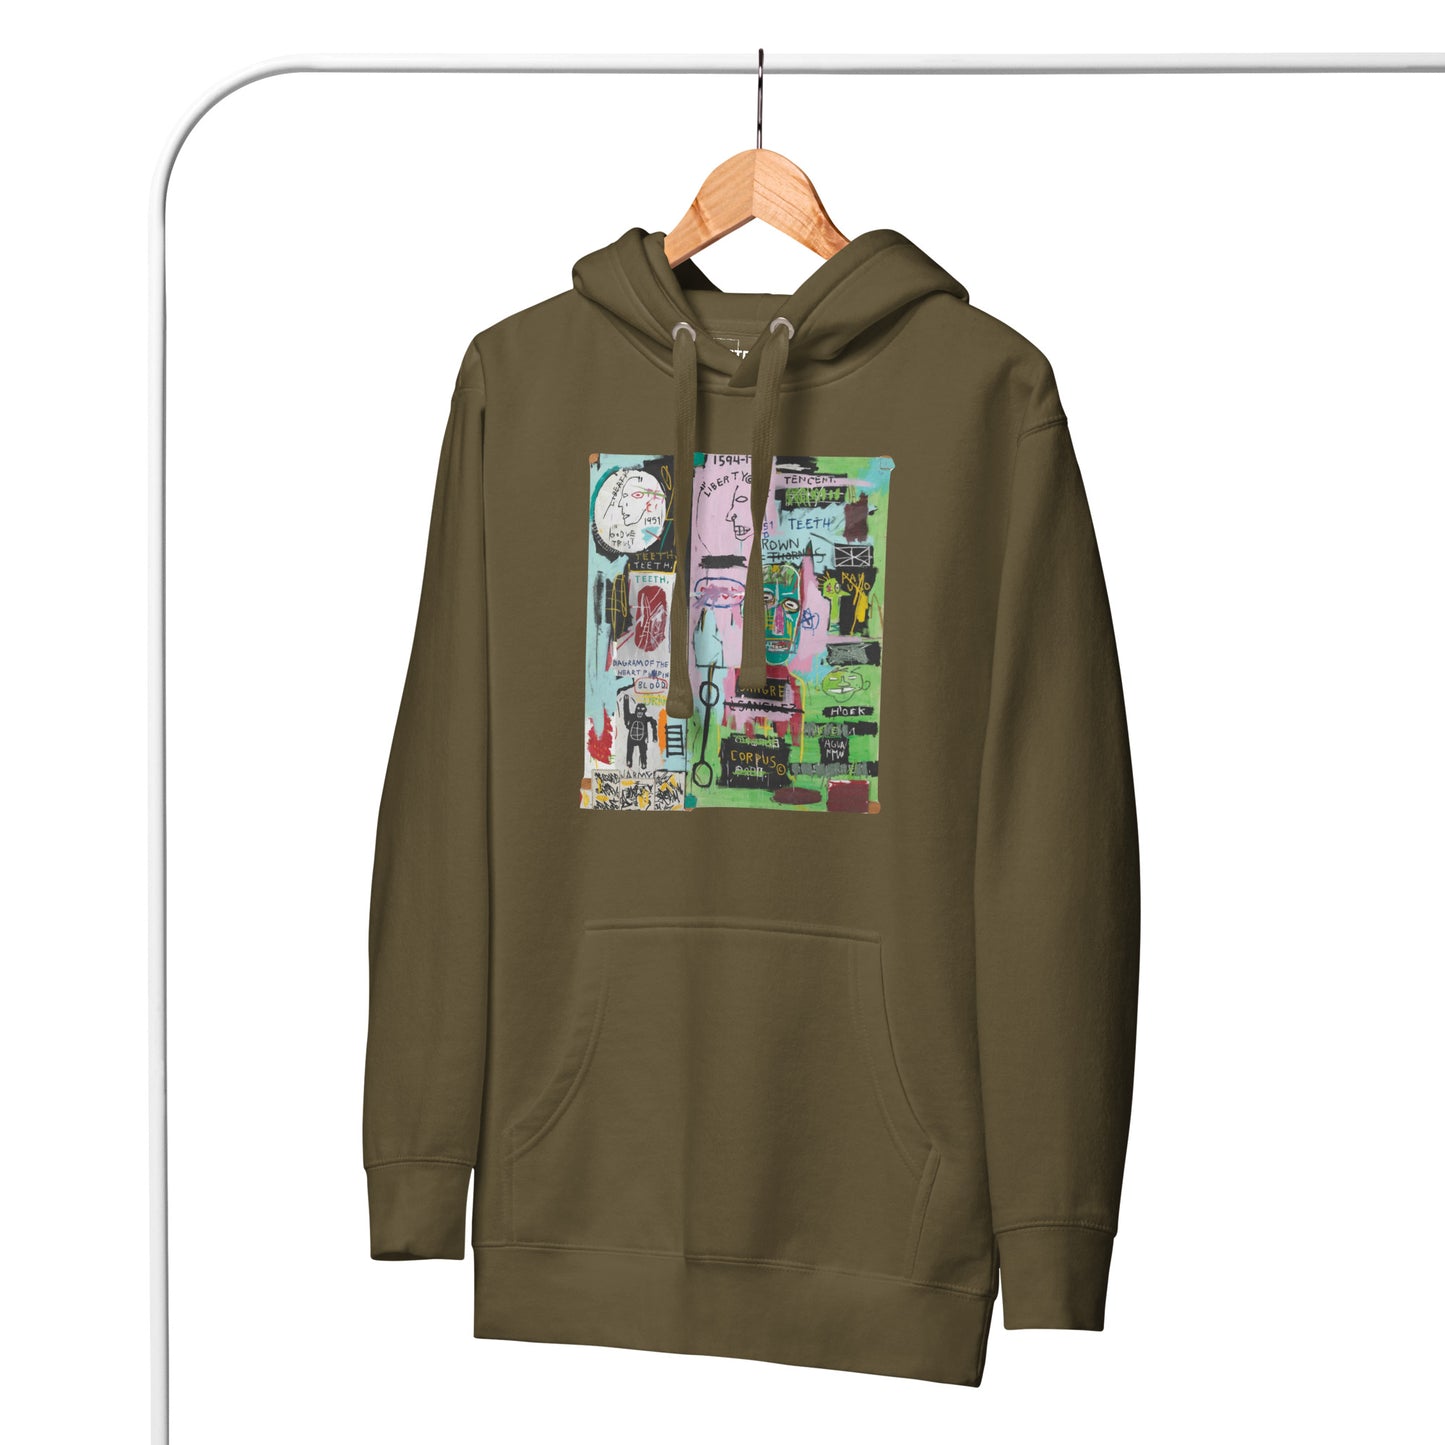 Jean-Michel Basquiat "In Italian" Artwork Printed Premium Streetwear Sweatshirt Hoodie Olive Green